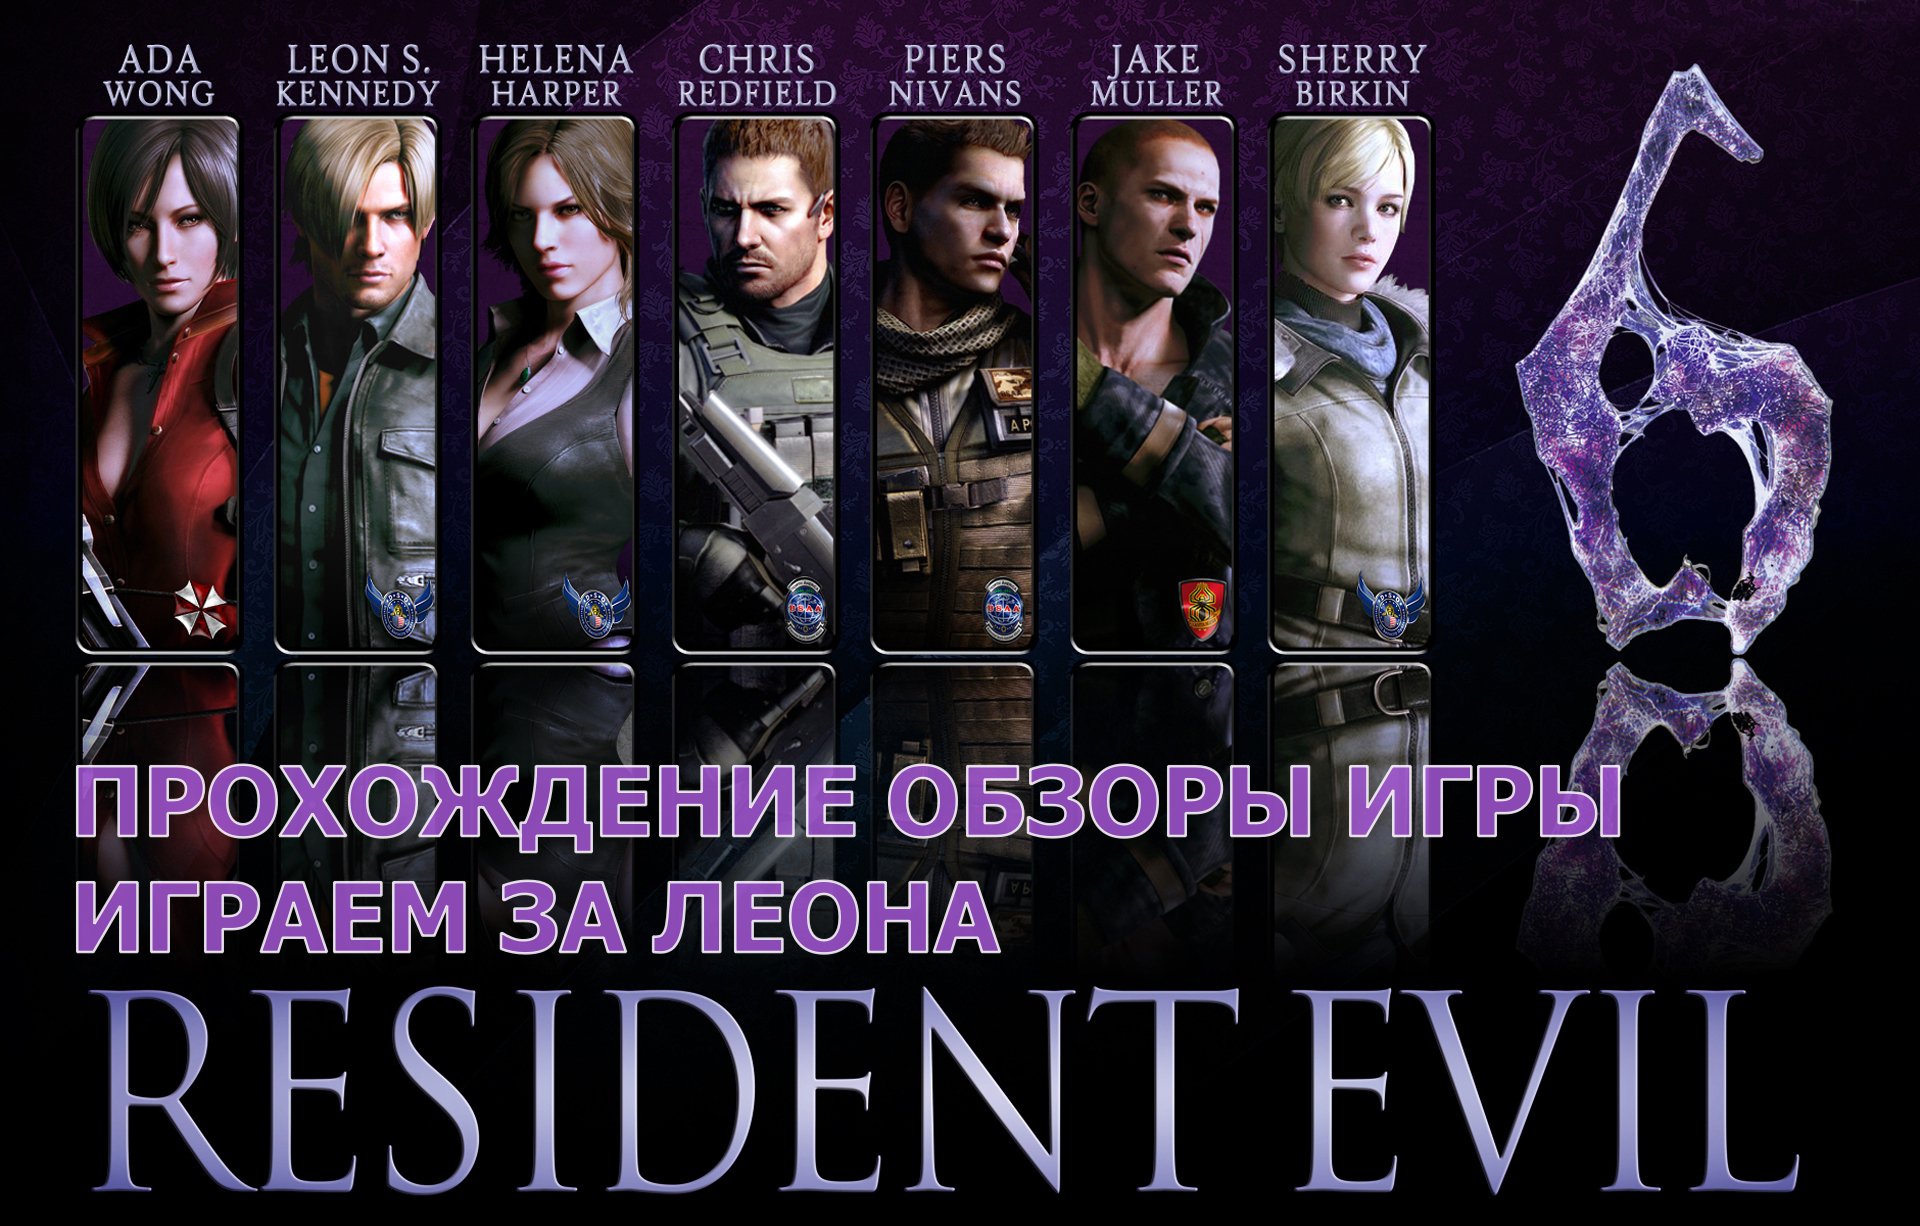 Прохождение обзоры игры - Resident Evil 6 за Леона играем # 20. PC - HD Full 1080p. Конец игры!